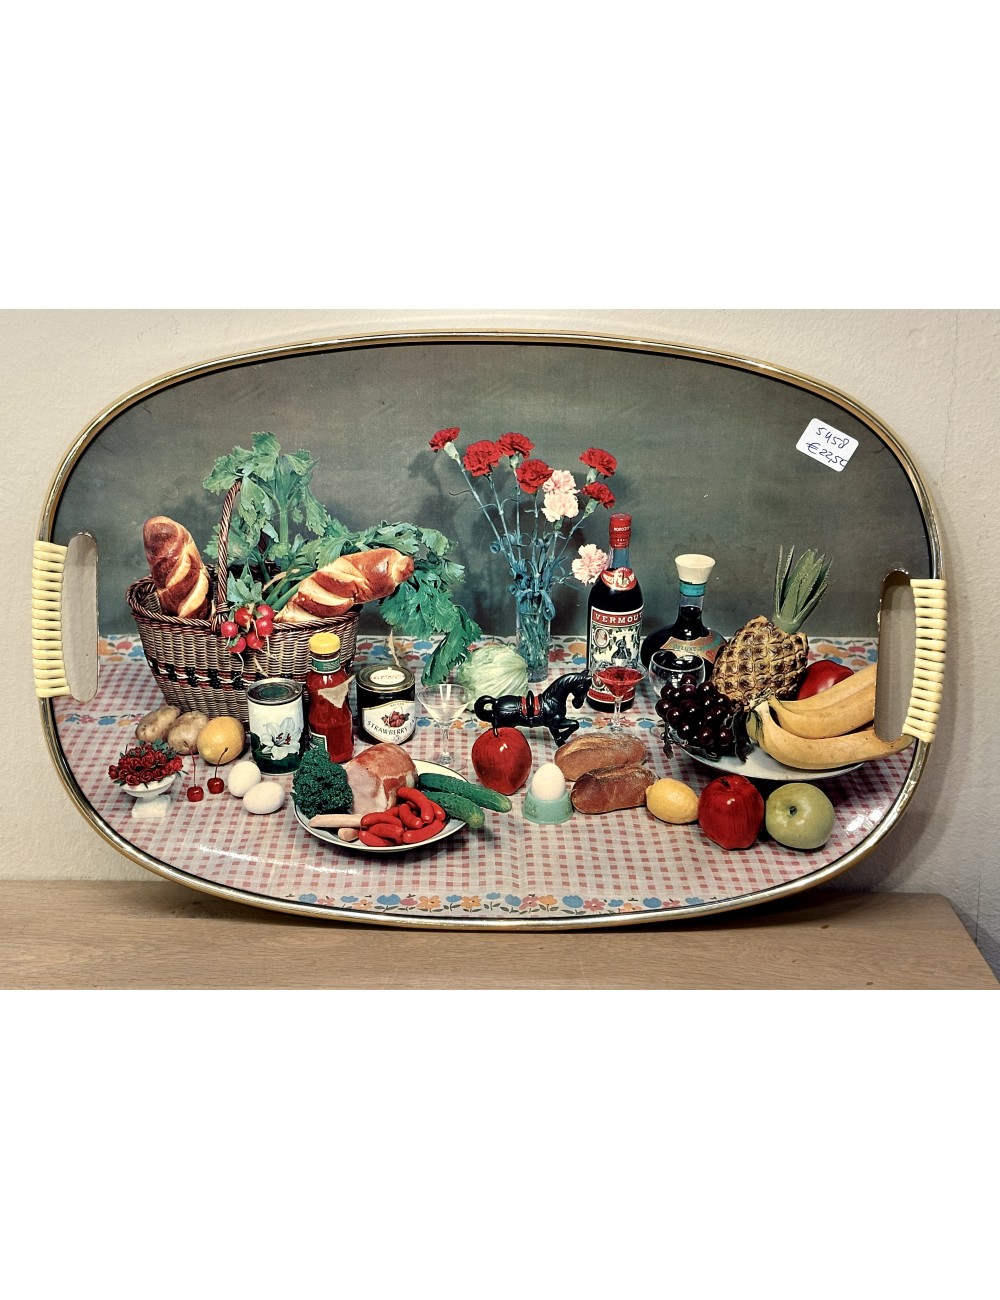 Aanpassing niveau marmeren Dienblad met geplastificeerde vintage décor afbeelding Vermouth, stokbrood,  fruit, vlees, groenten en anjers